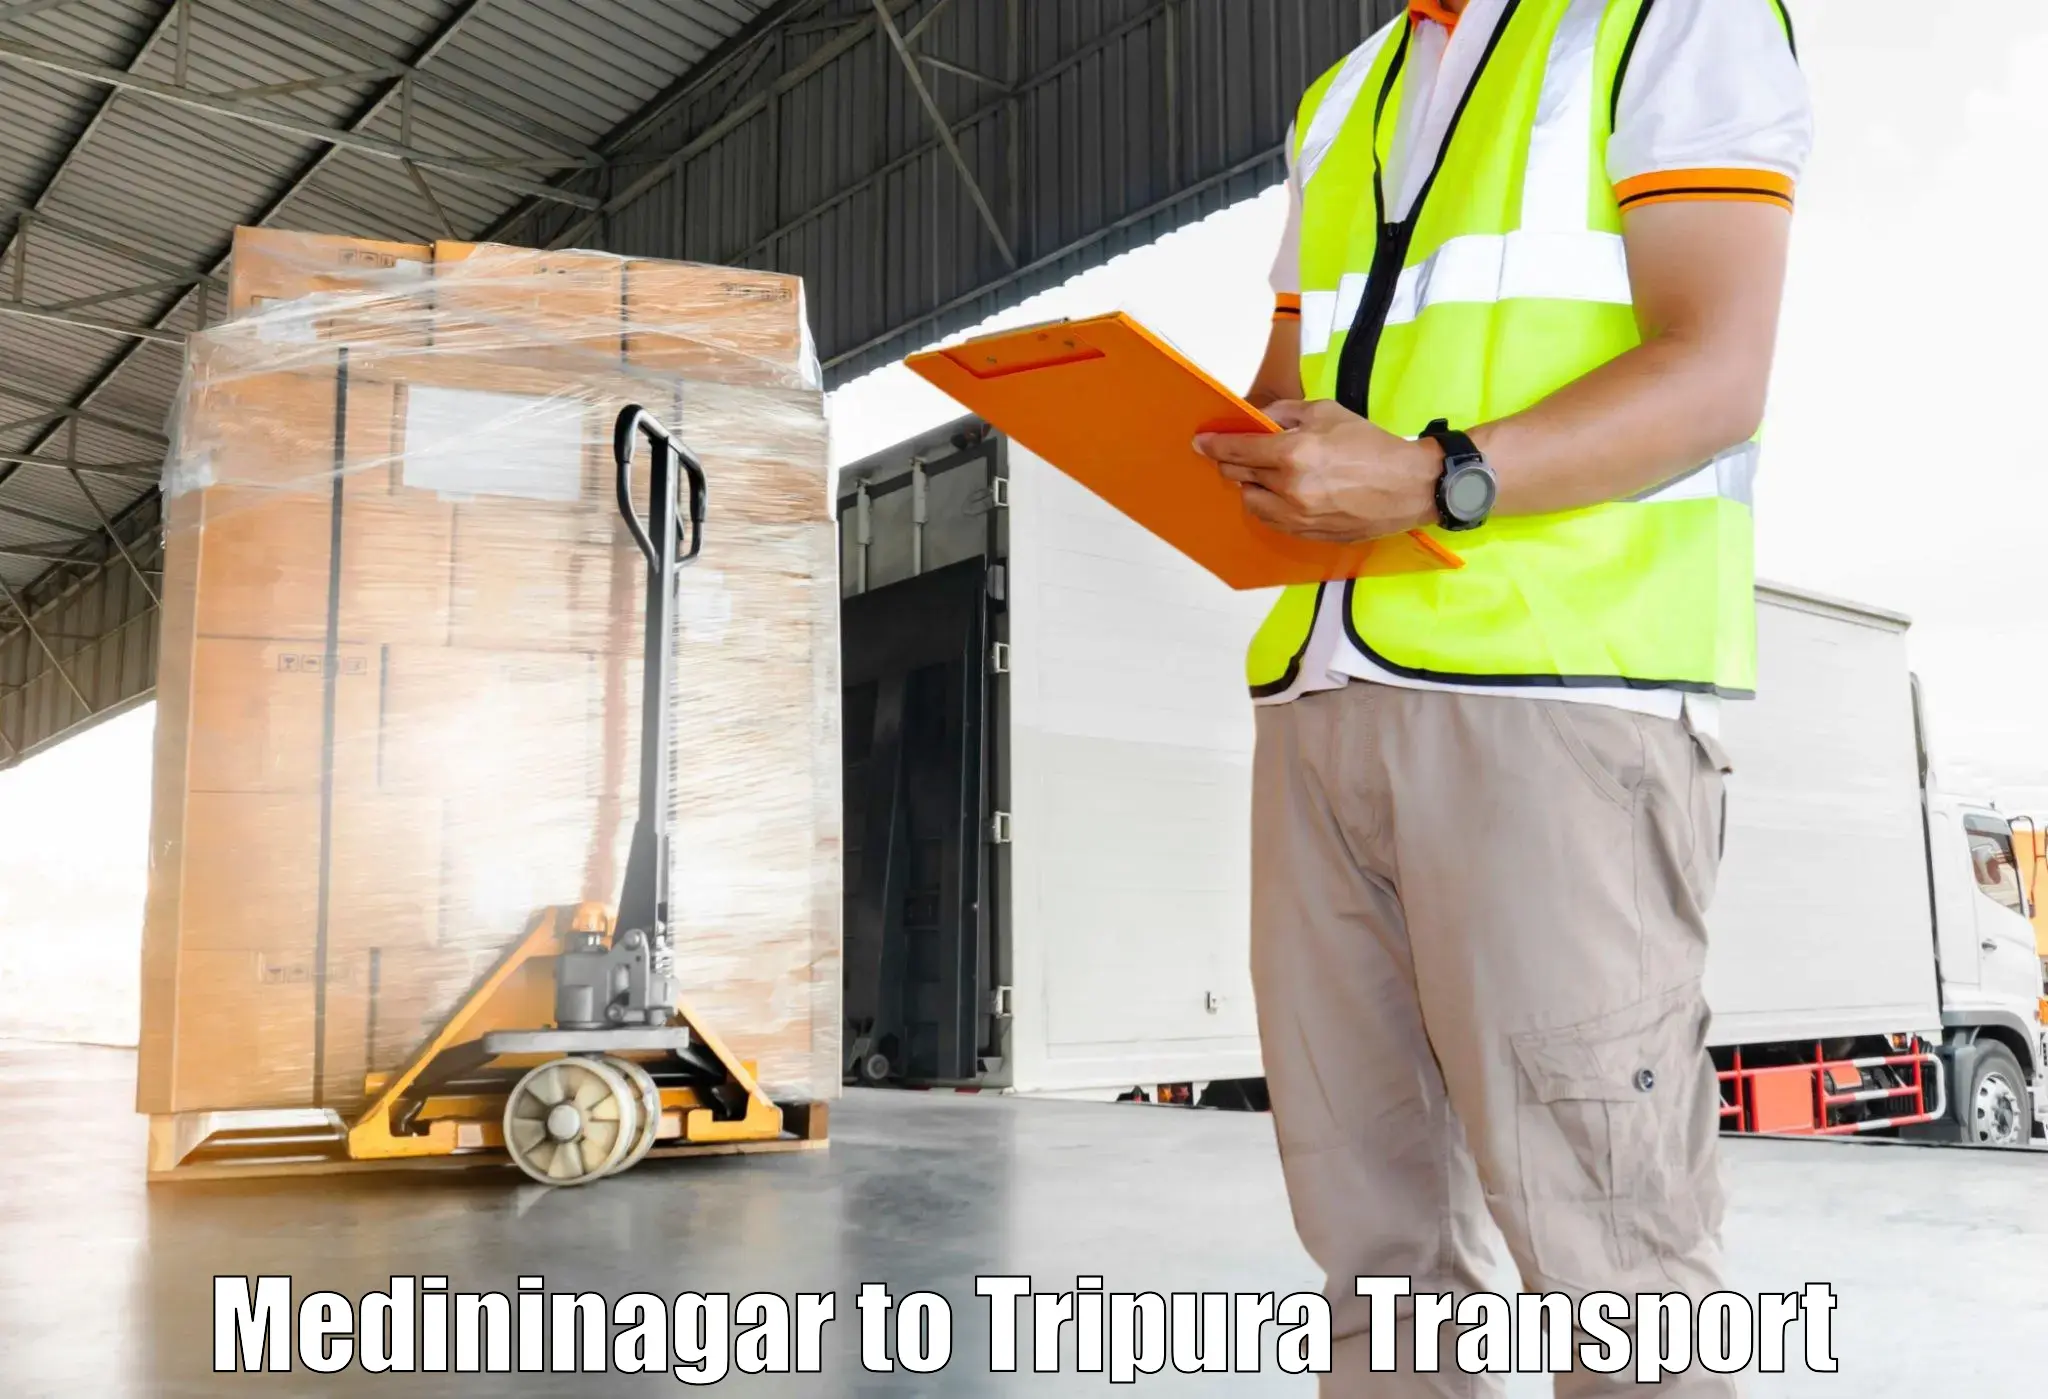 Furniture transport service Medininagar to Santirbazar